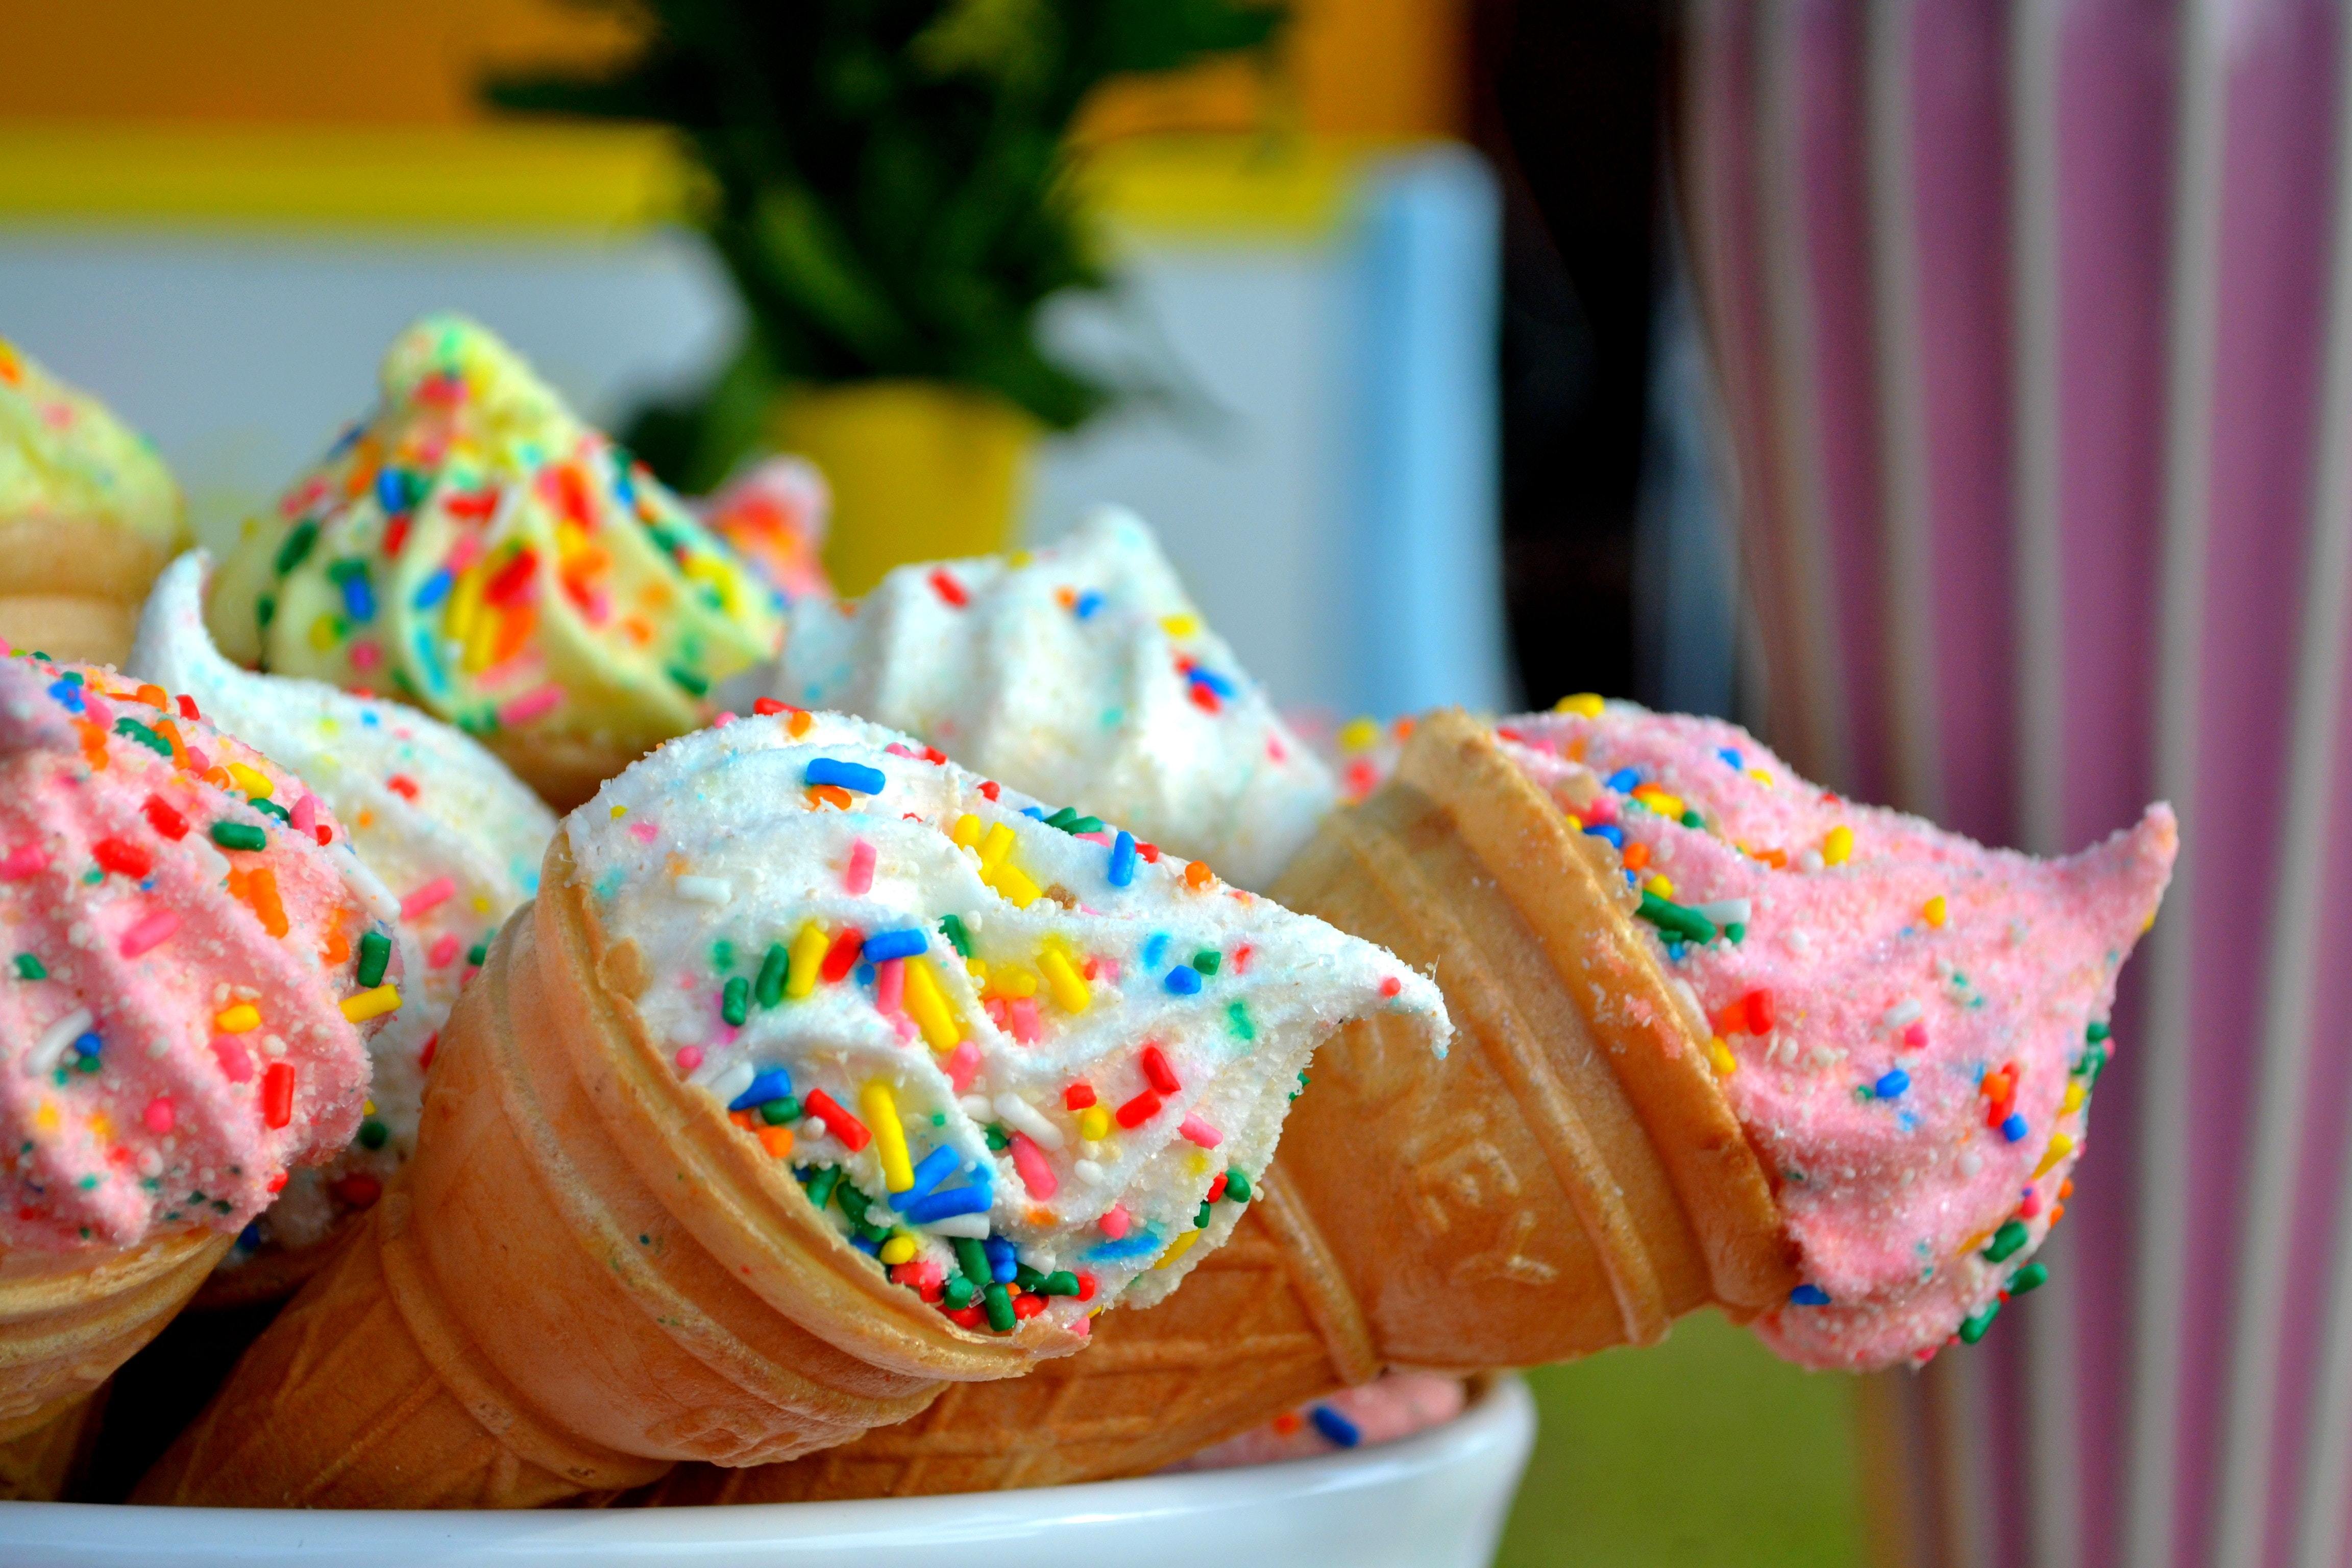 Image: Cone, ice cream, cream, confetti